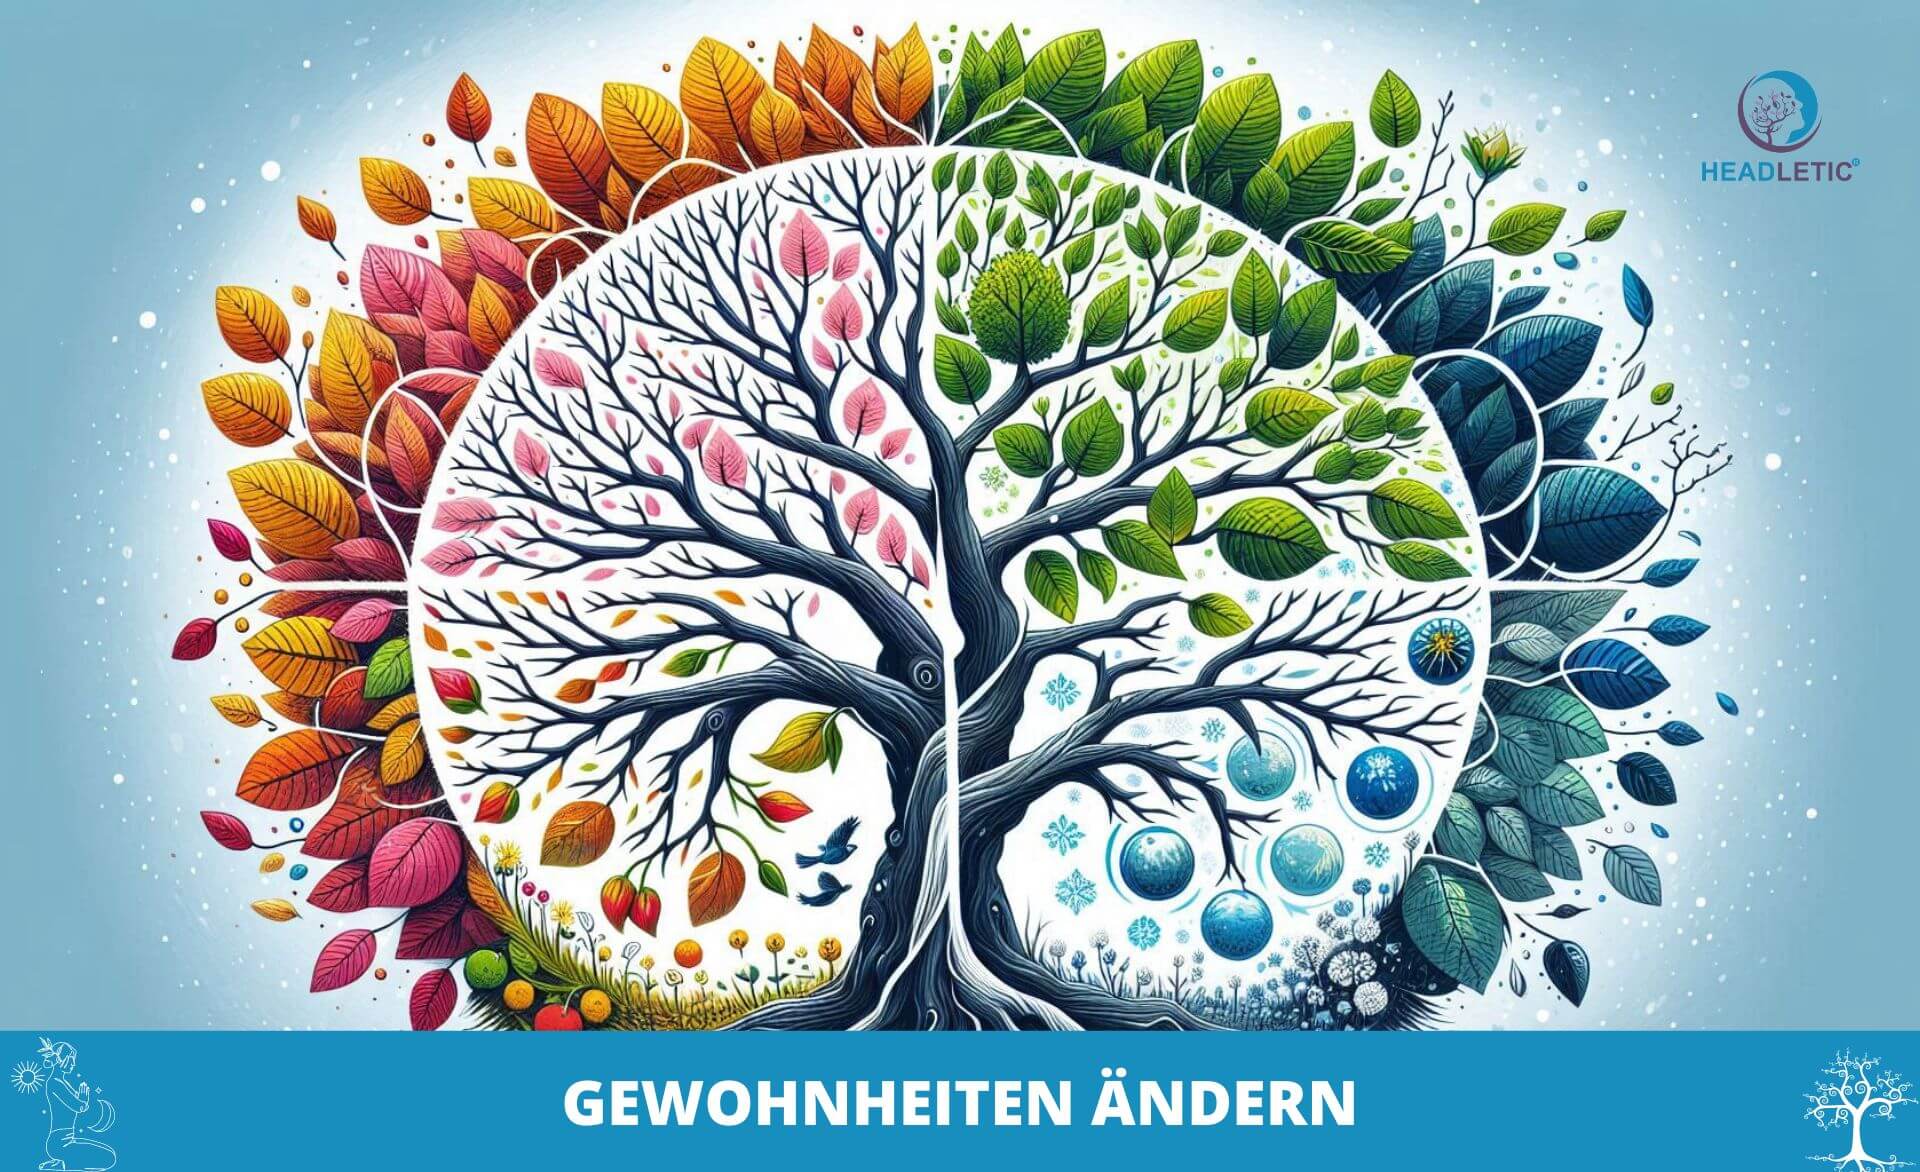 Eine Illustration eines Baums mit vier Blattquadraten, die die Jahreszeiten darstellen. Der Text „GEWOHNHEITEN ÄNDERN“ ist darunter abgedruckt und unterstreicht die Idee „Positiver Gewohnheiten“. In der oberen rechten Ecke befindet sich ein Headletic-Logo.